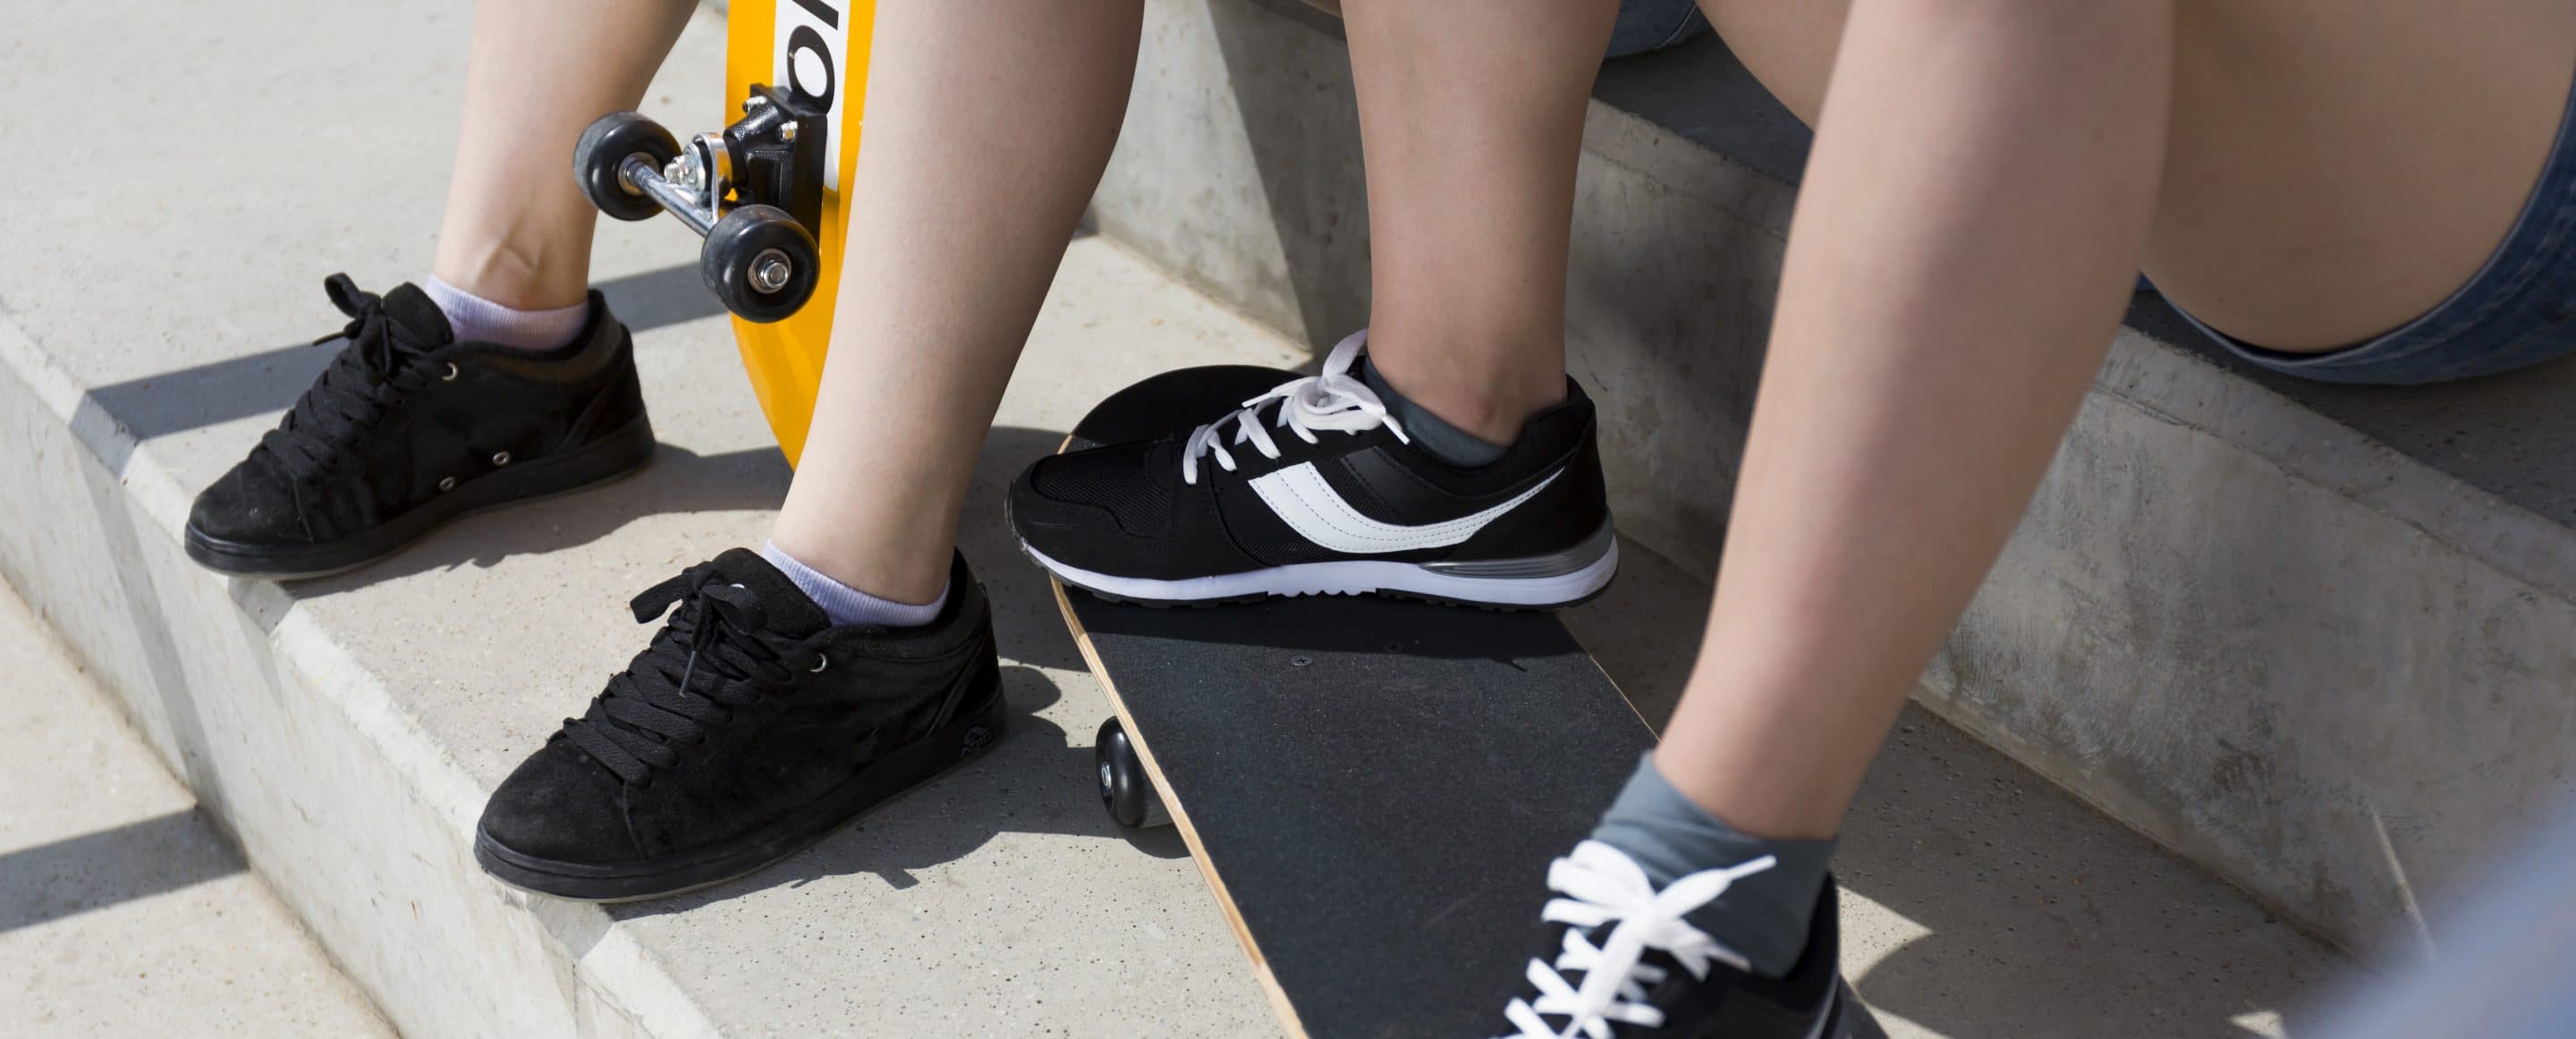 Teebeutel gegen Stinkstiefel 5 teenagers legs in sport shoes PU2XHZR scaled